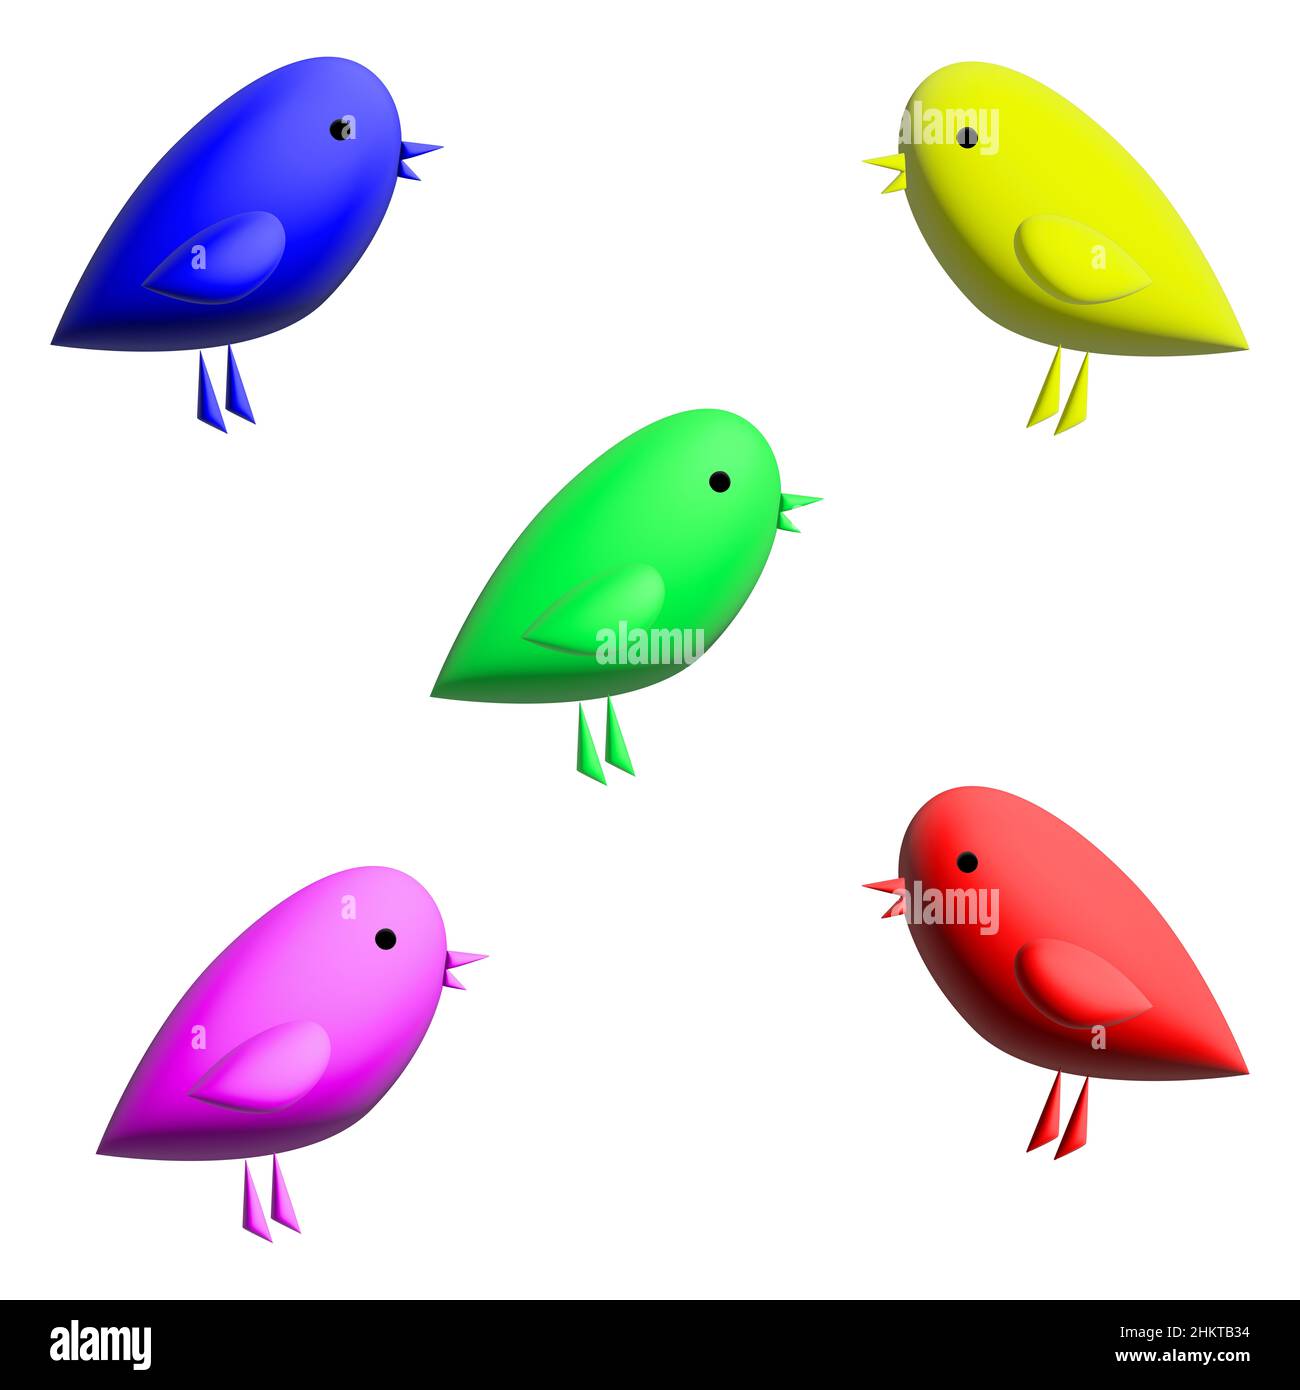 3D illustrazione. Un set colorato con uccelli in stile cartoon minimalista. grafica 3d. Immagine semplice. Icone. Design per icone o social network. Foto Stock